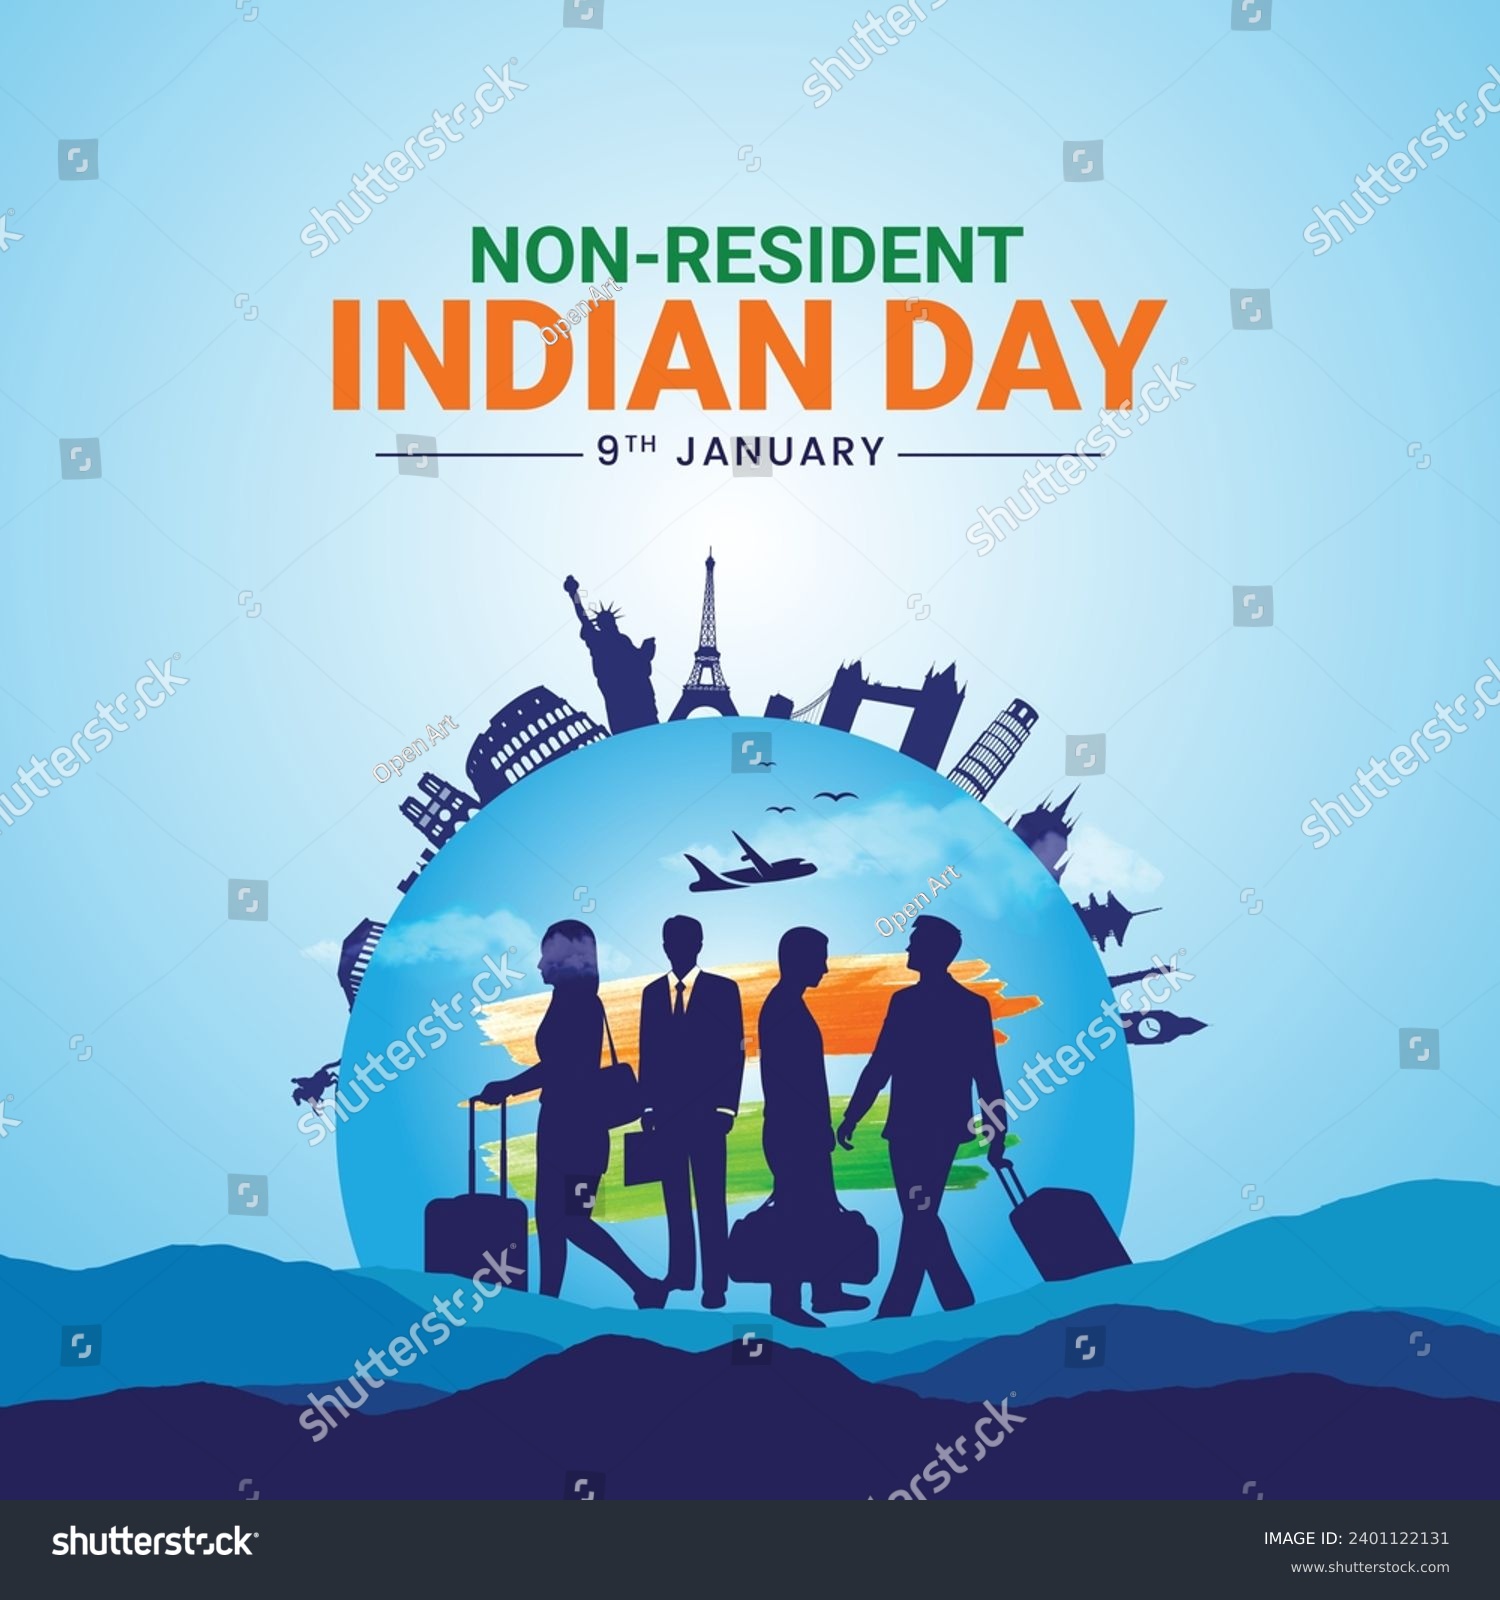 Non-Resident Indian Day Design for Banner, Poster, Web, Social Media - Pravasi Bharatiya Divas - Meaning Non-Resident Indian Day. Editable illustration design for NRI We are proud of our NRI, Jai Hind #2401122131